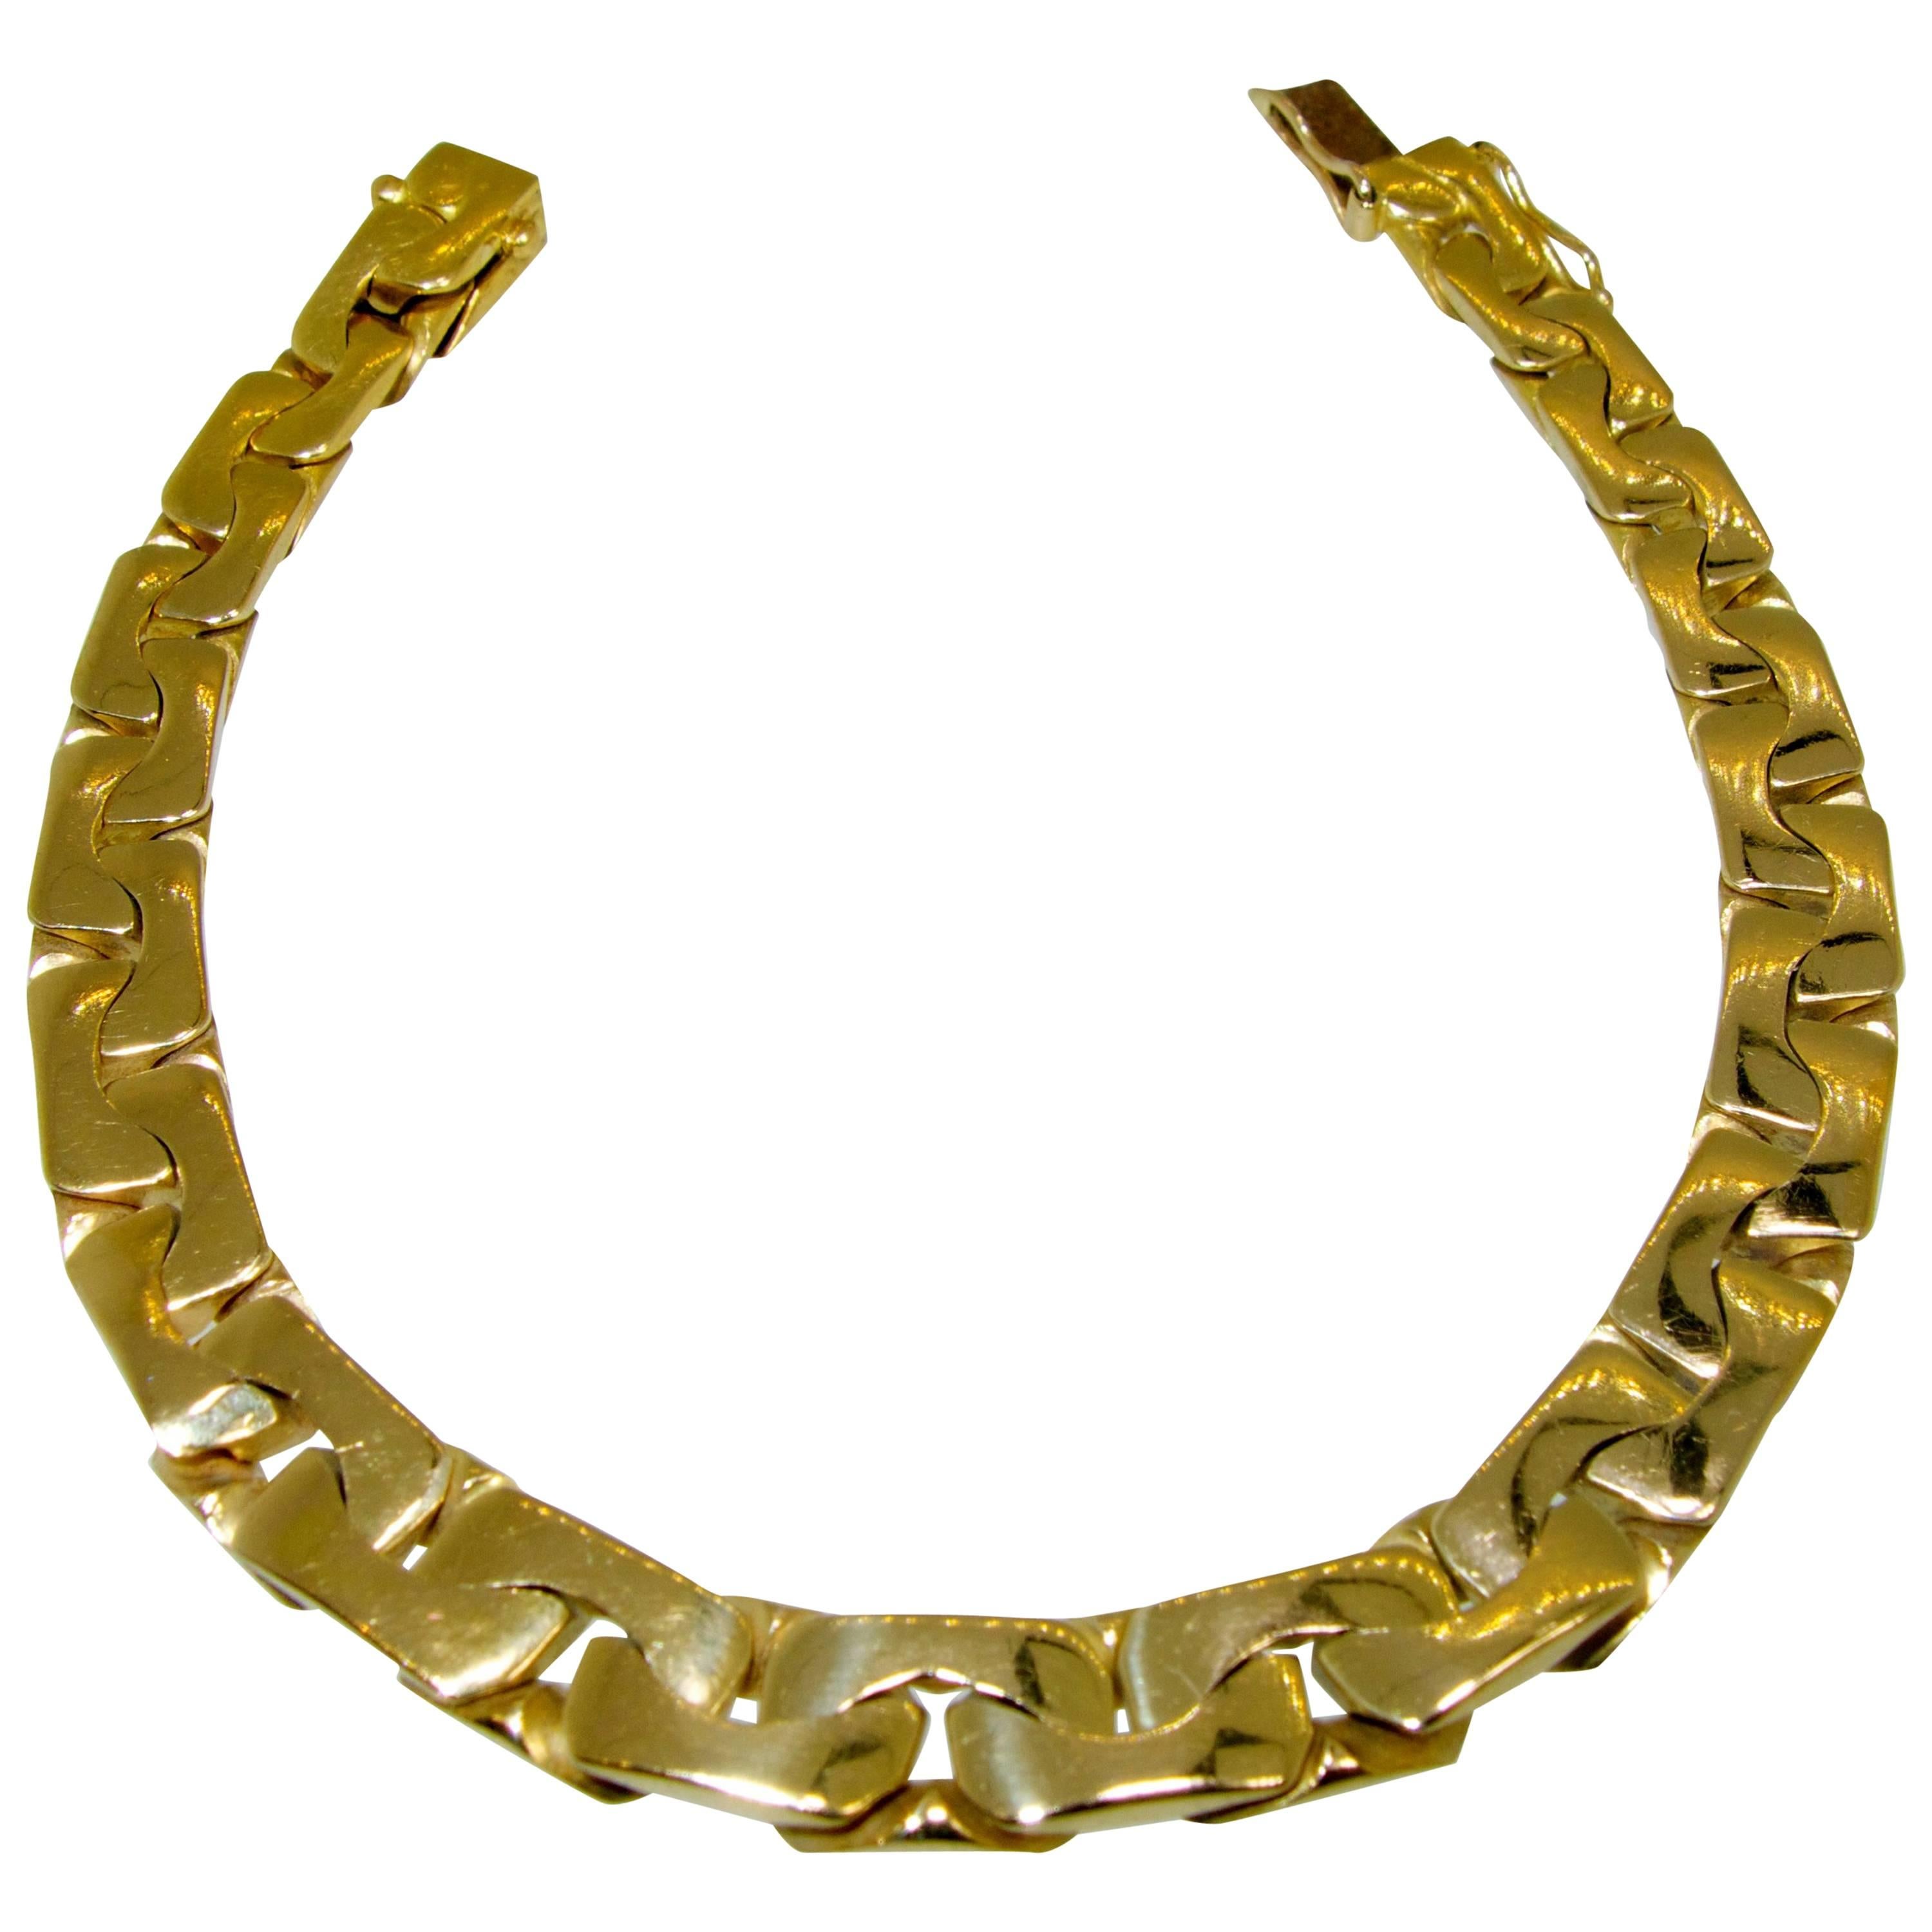 Unusual Gold Link Bracelet